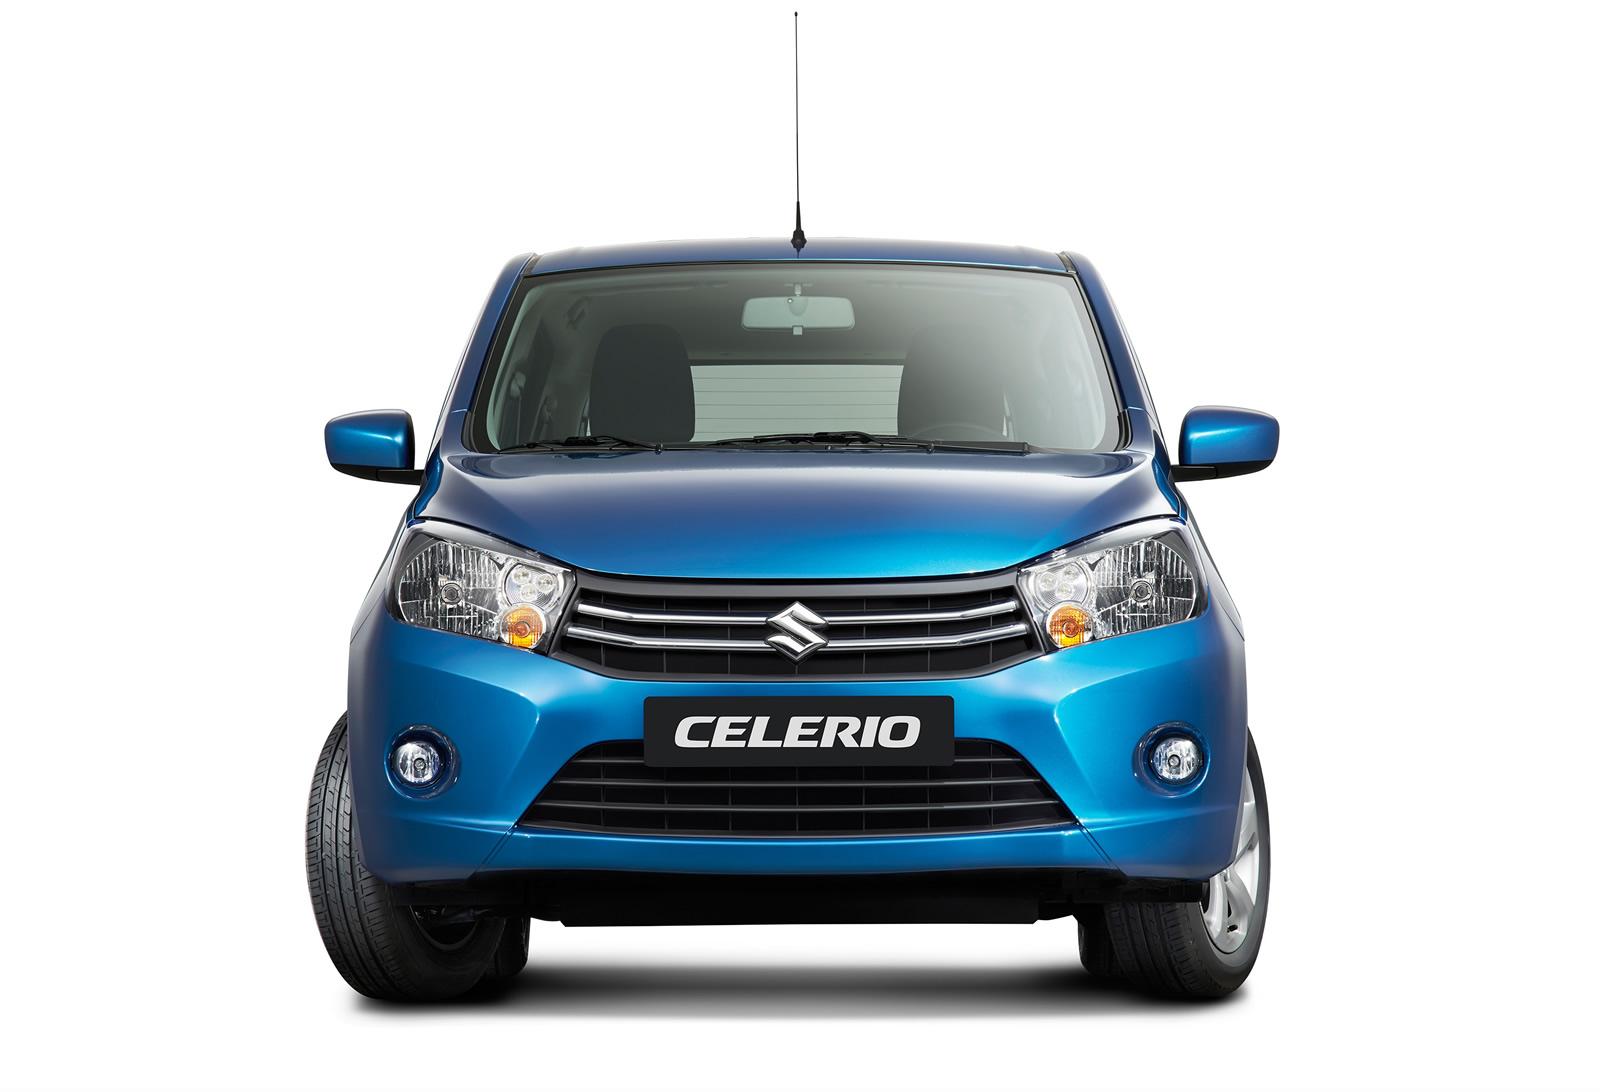 Euro-spec-2014-Suzuki-Celerio-1